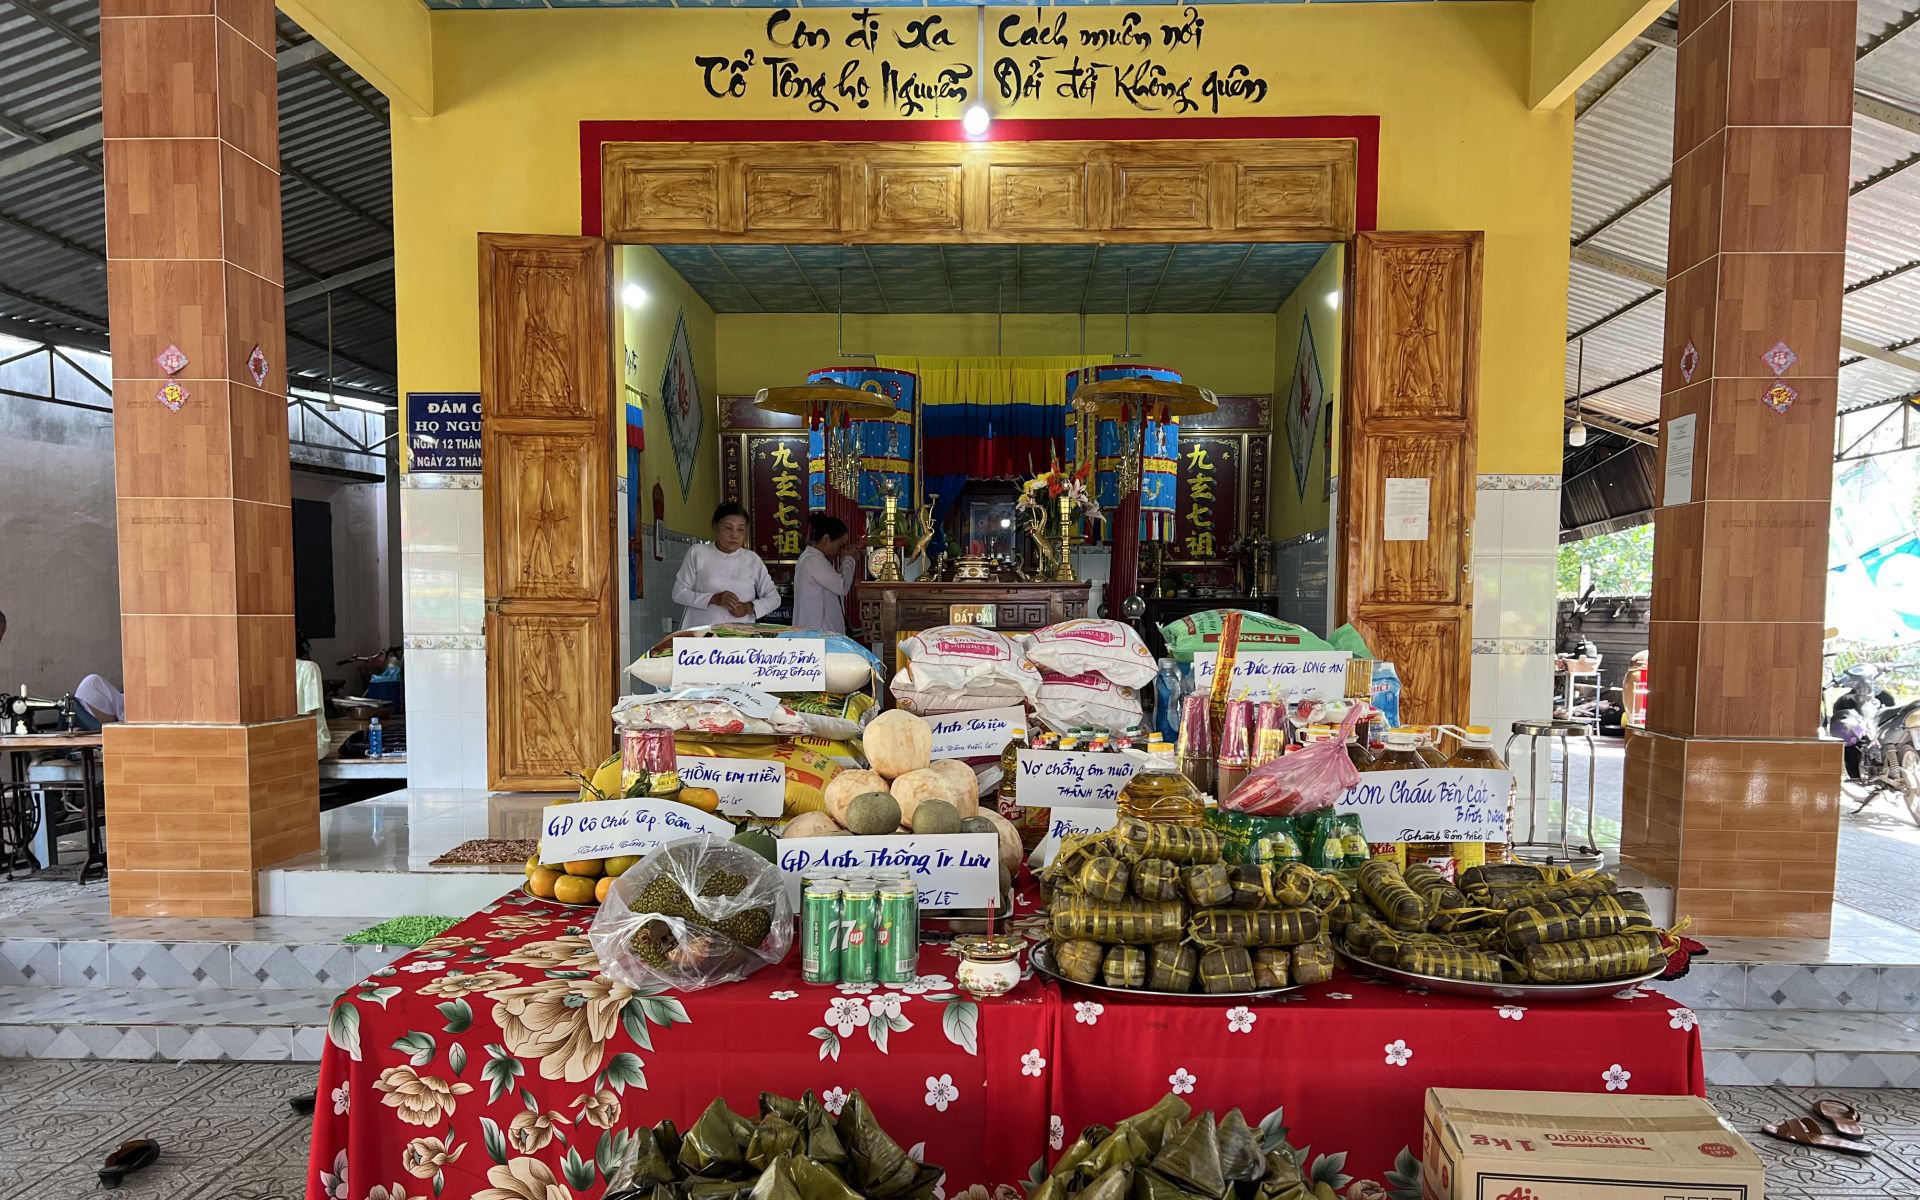 Dòng họ Nguyễn ở Hòa Thành của Tây Ninh ngày giỗ họ có tới 62 món chay